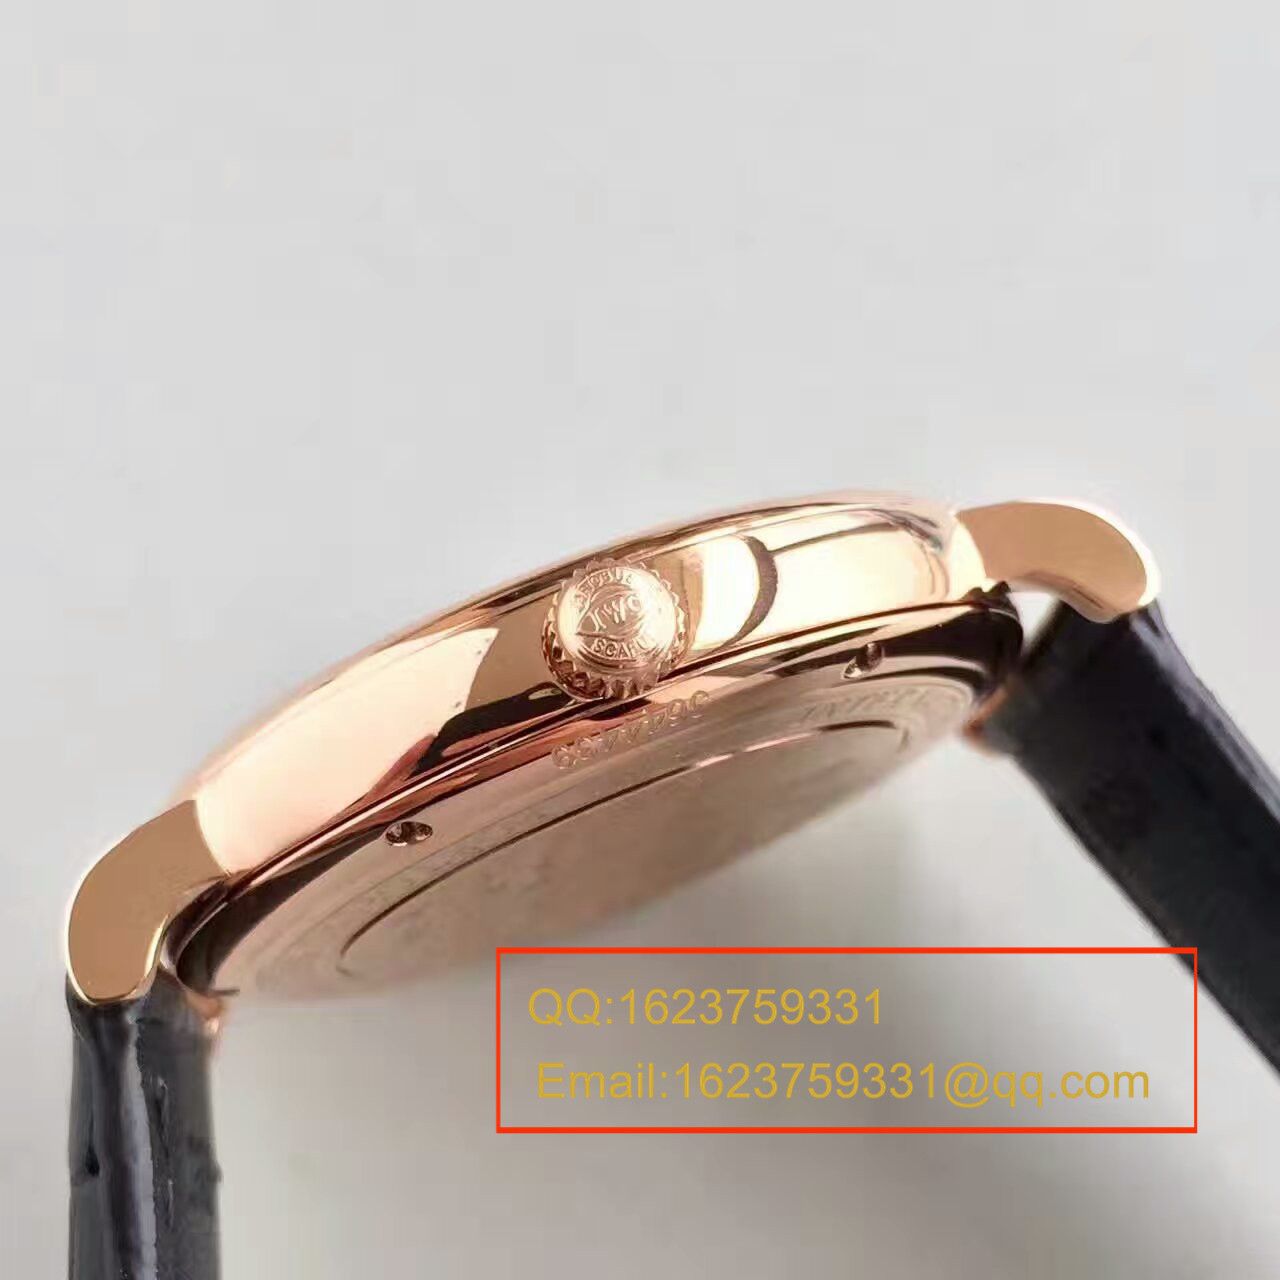 【独家视频测评MK厂1:1超A高仿手表】万国柏涛菲诺系列IW356511腕表 